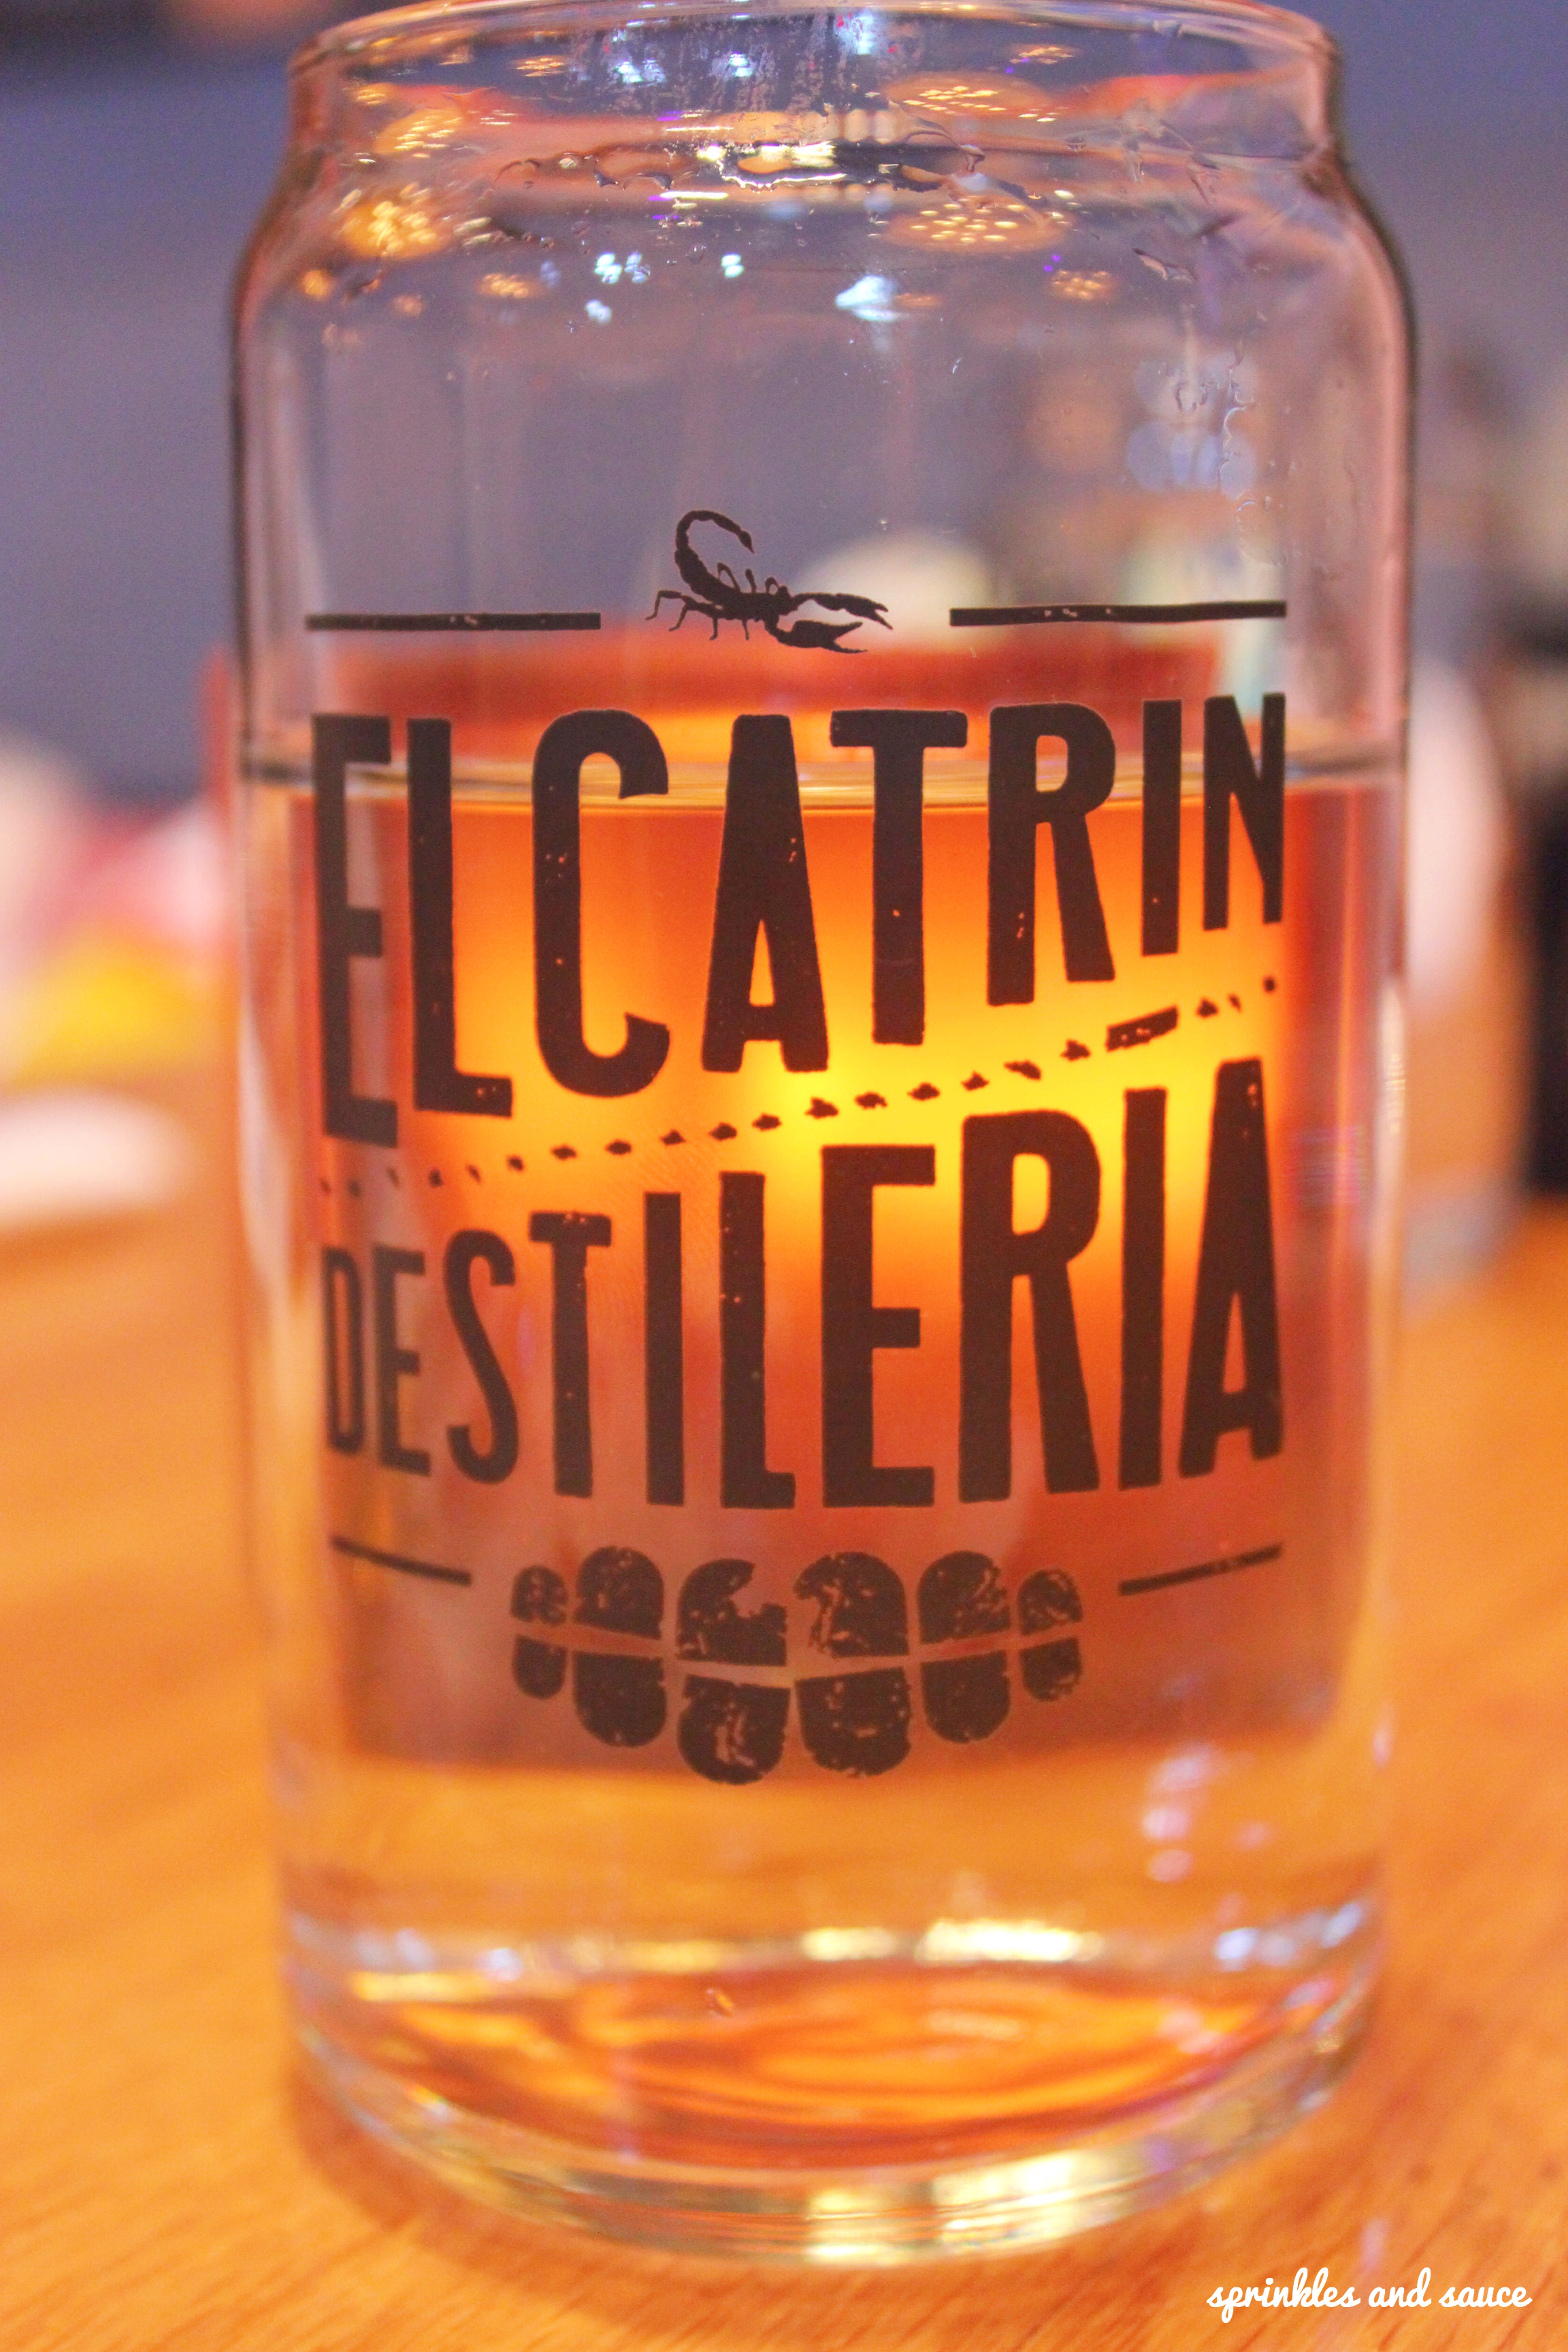 El Catrin – Distillery District